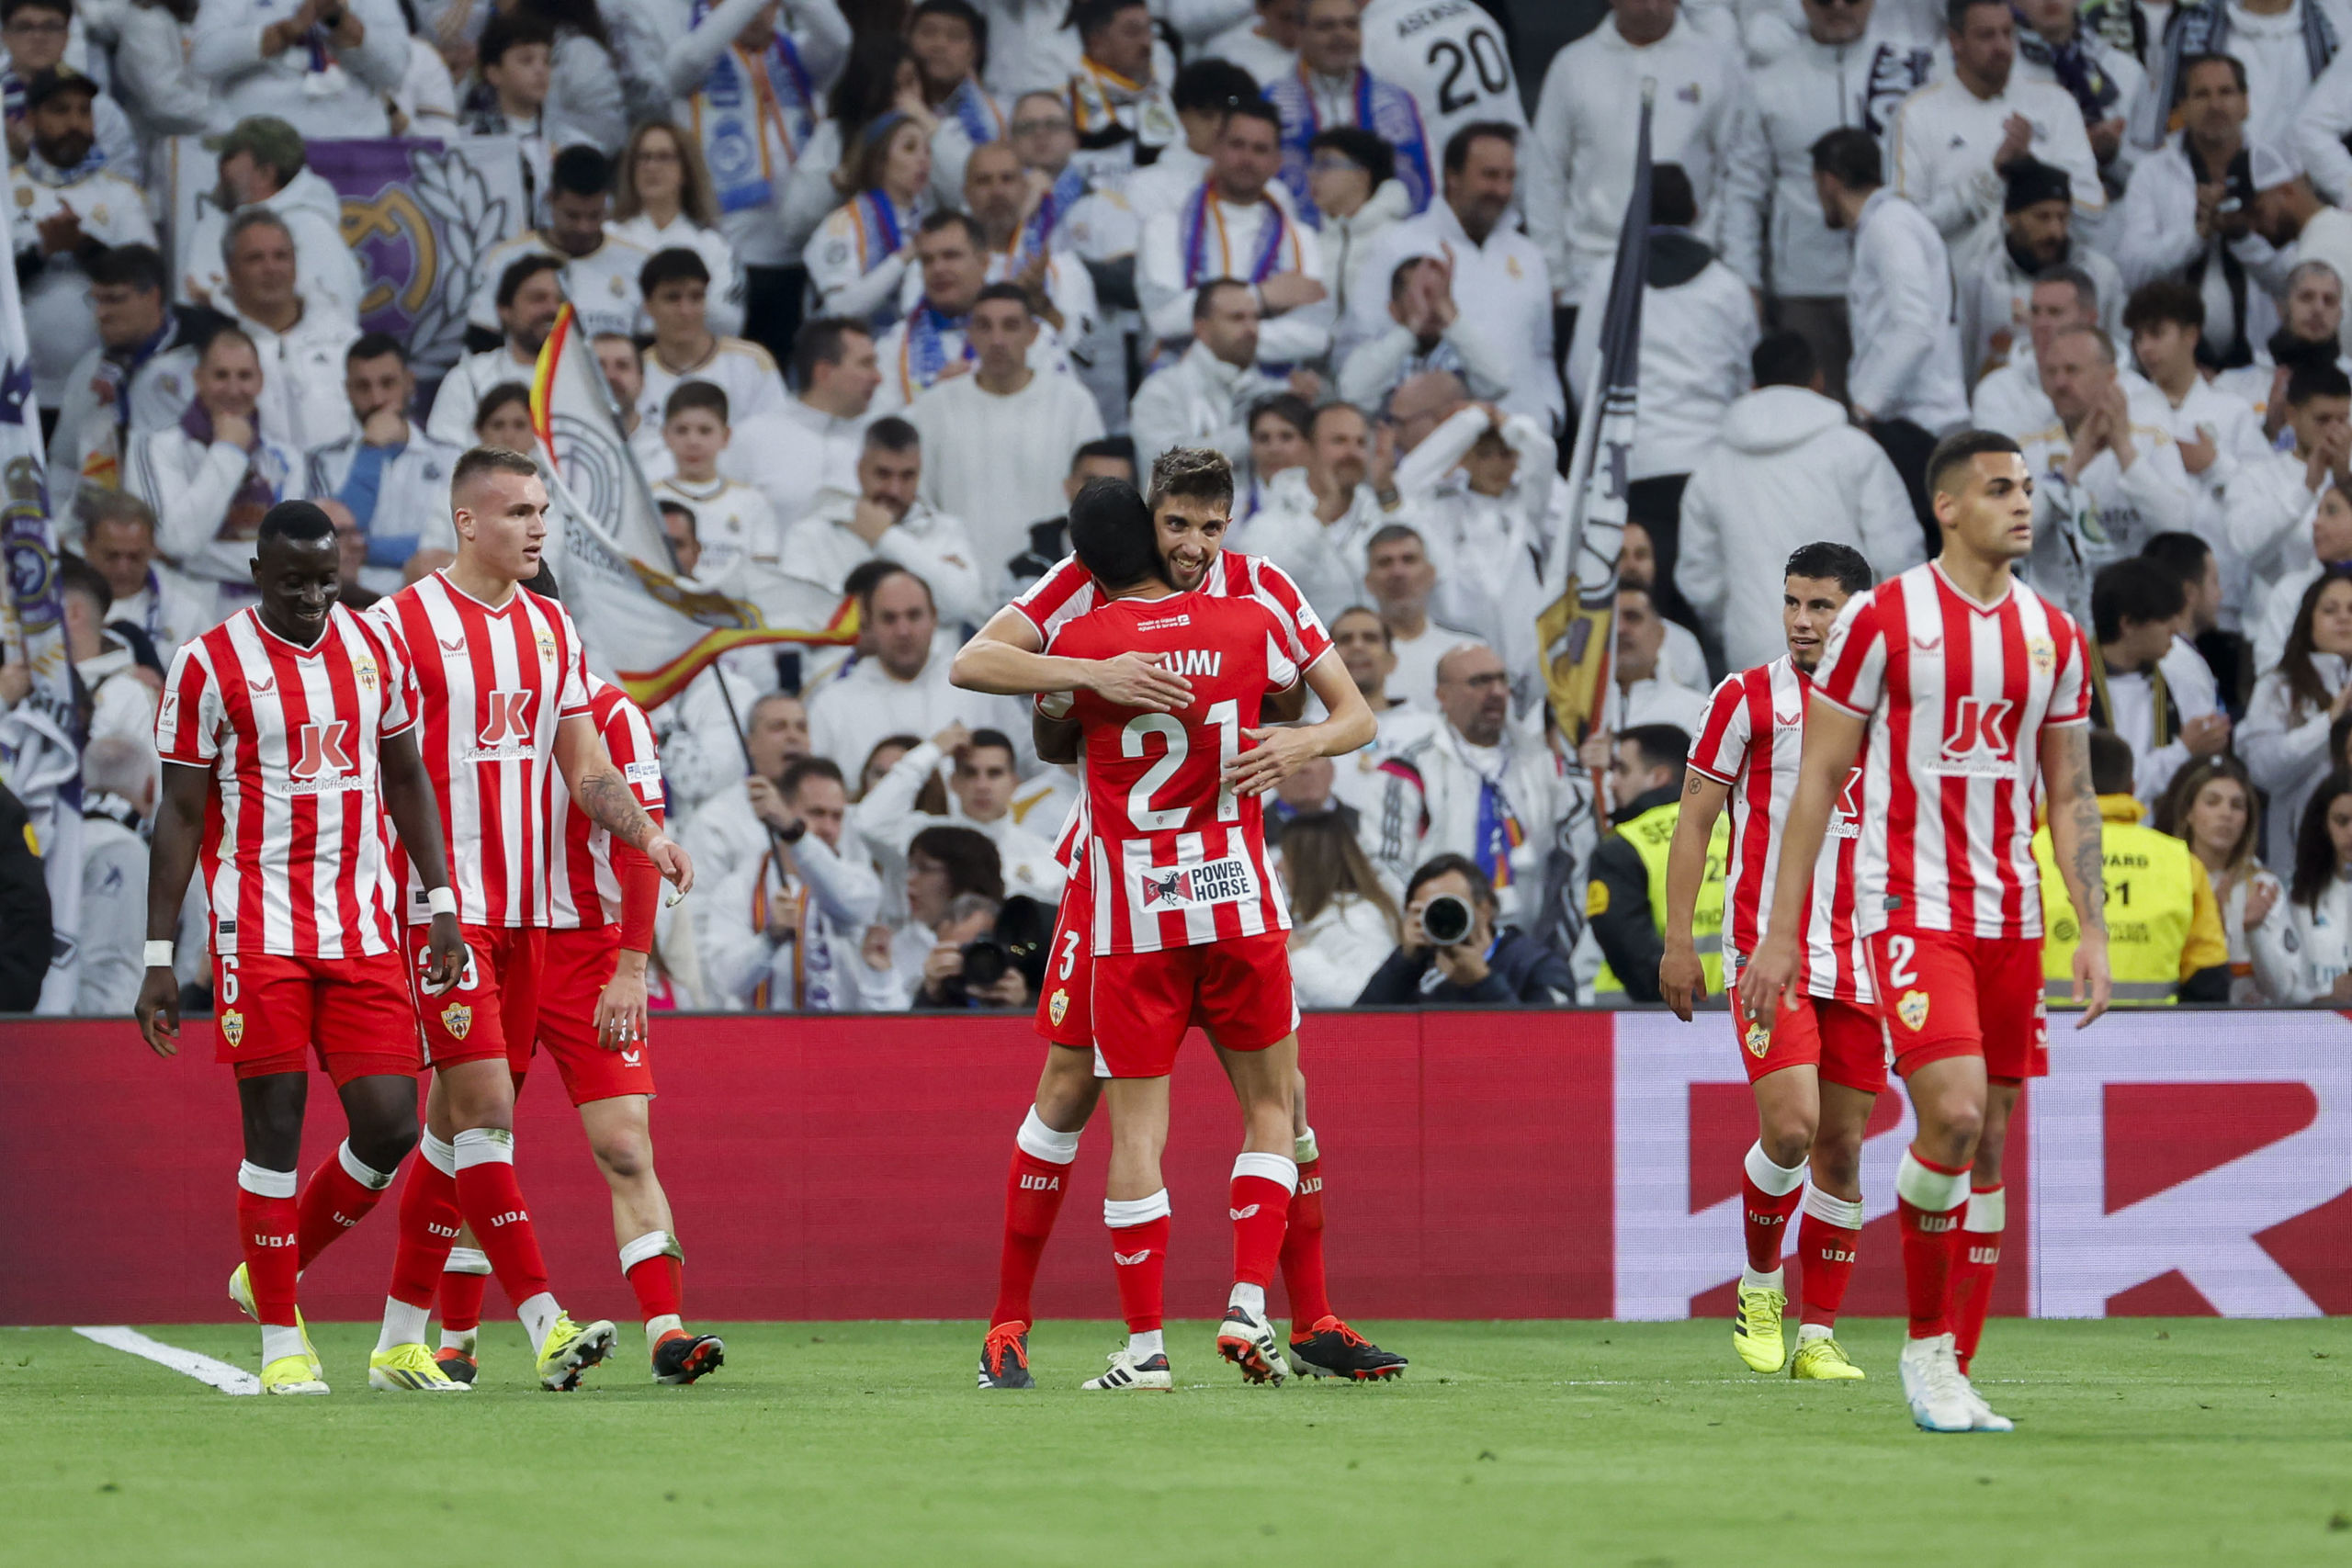 Clamor en el Almería tras la derrota en el Bernabéu: "Alguien ha decidido que aquí no podíamos ganar"